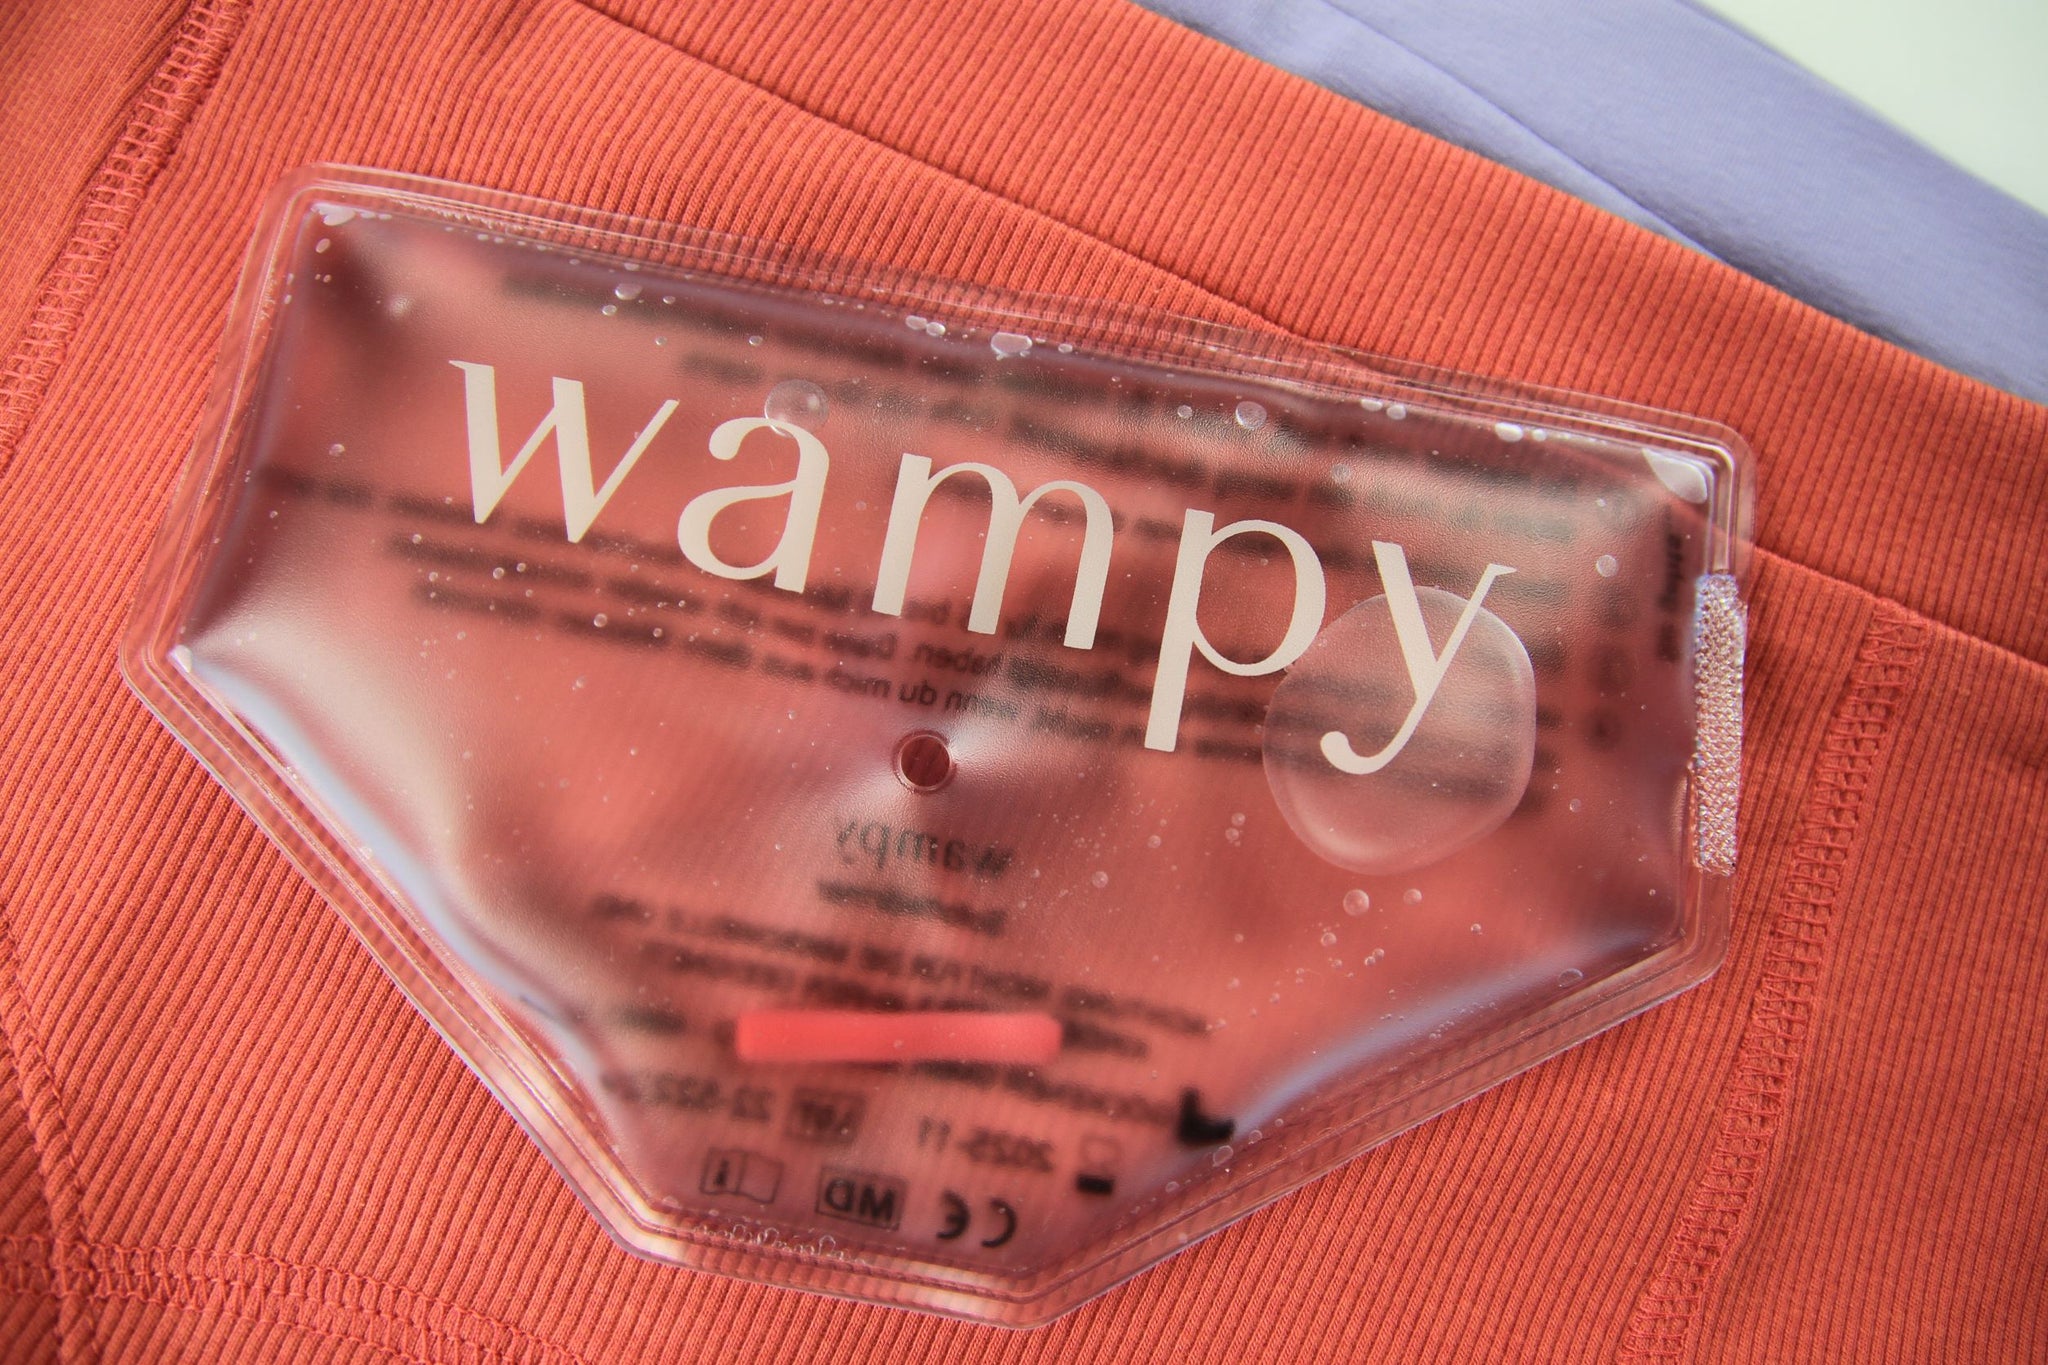 Wampy Wärmepad auf rosaroter und lavendel farbener Unterwäsche. Lindere jetzt deine Periodenschmerzen mit unserer beheizbaren Unterwäsche.